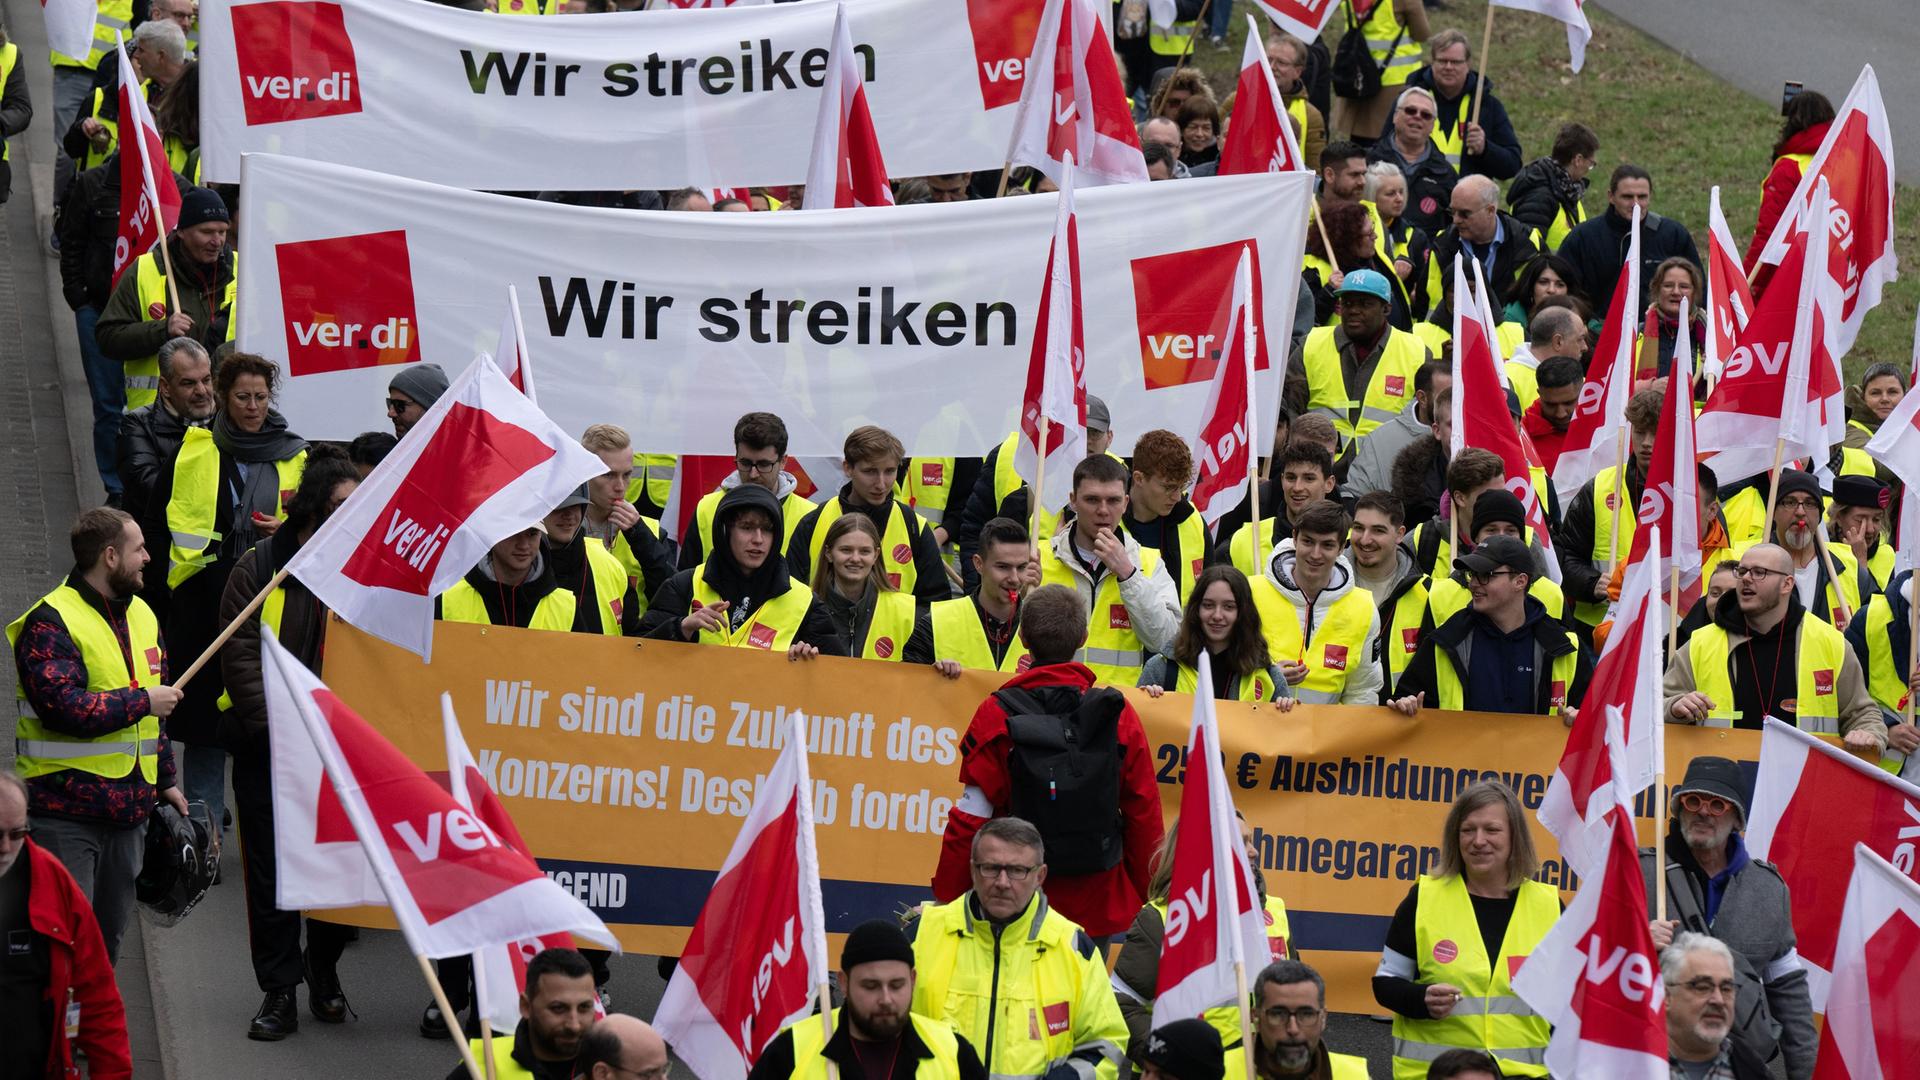 Blick von vorn auf einen Demonstrationszug: Die Teilnehmer tragen gelbe Warnwesten; einige von ihnen tragen Transparente und Fahnen.